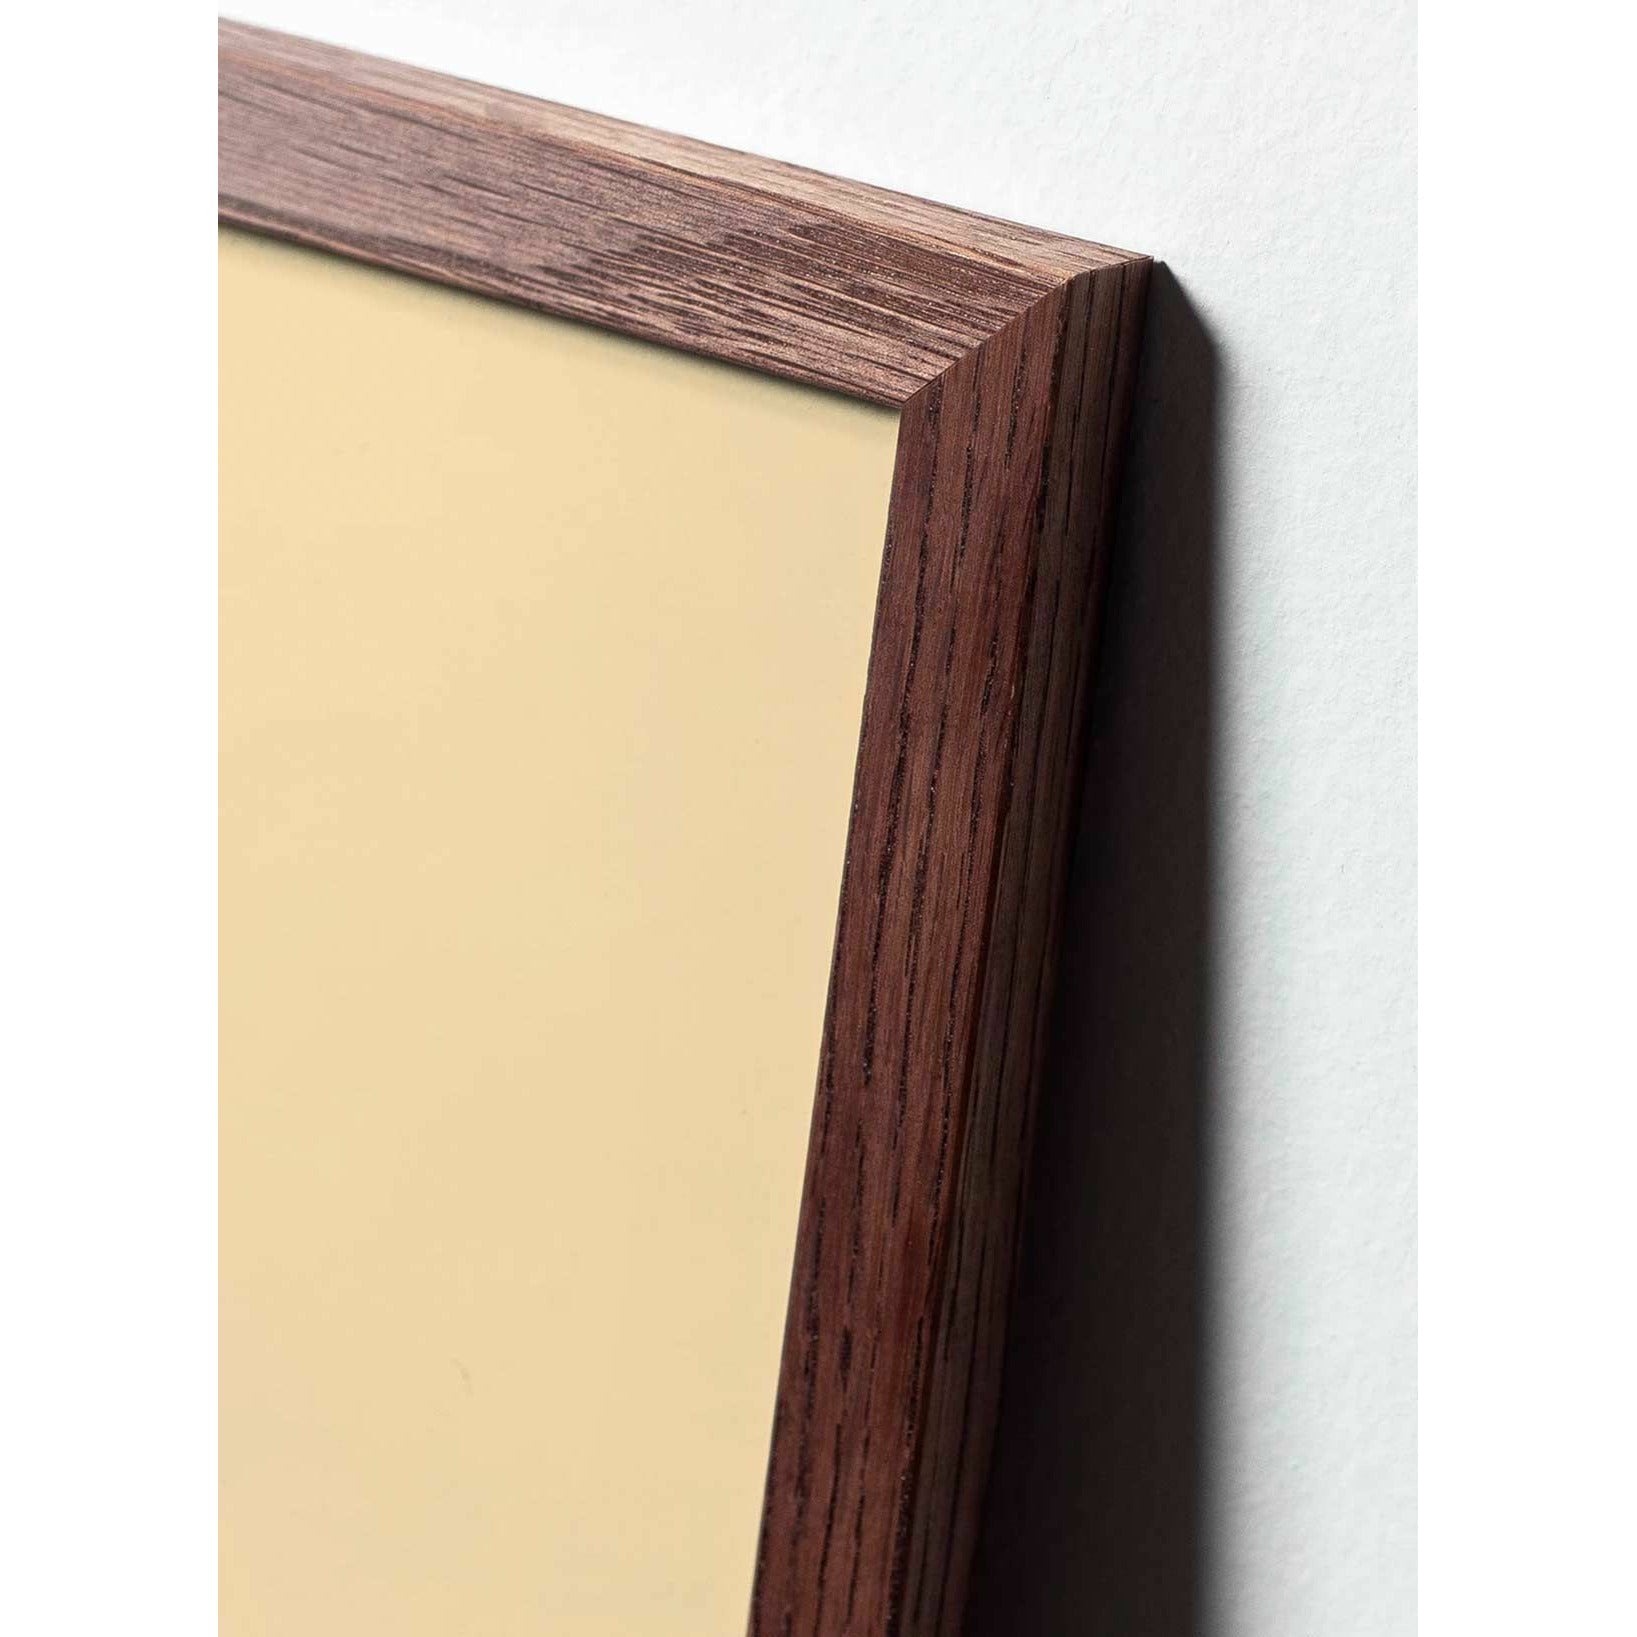 Póster clásico de BrainChild Teddy Bear, marco de madera oscura A5, fondo de color arena